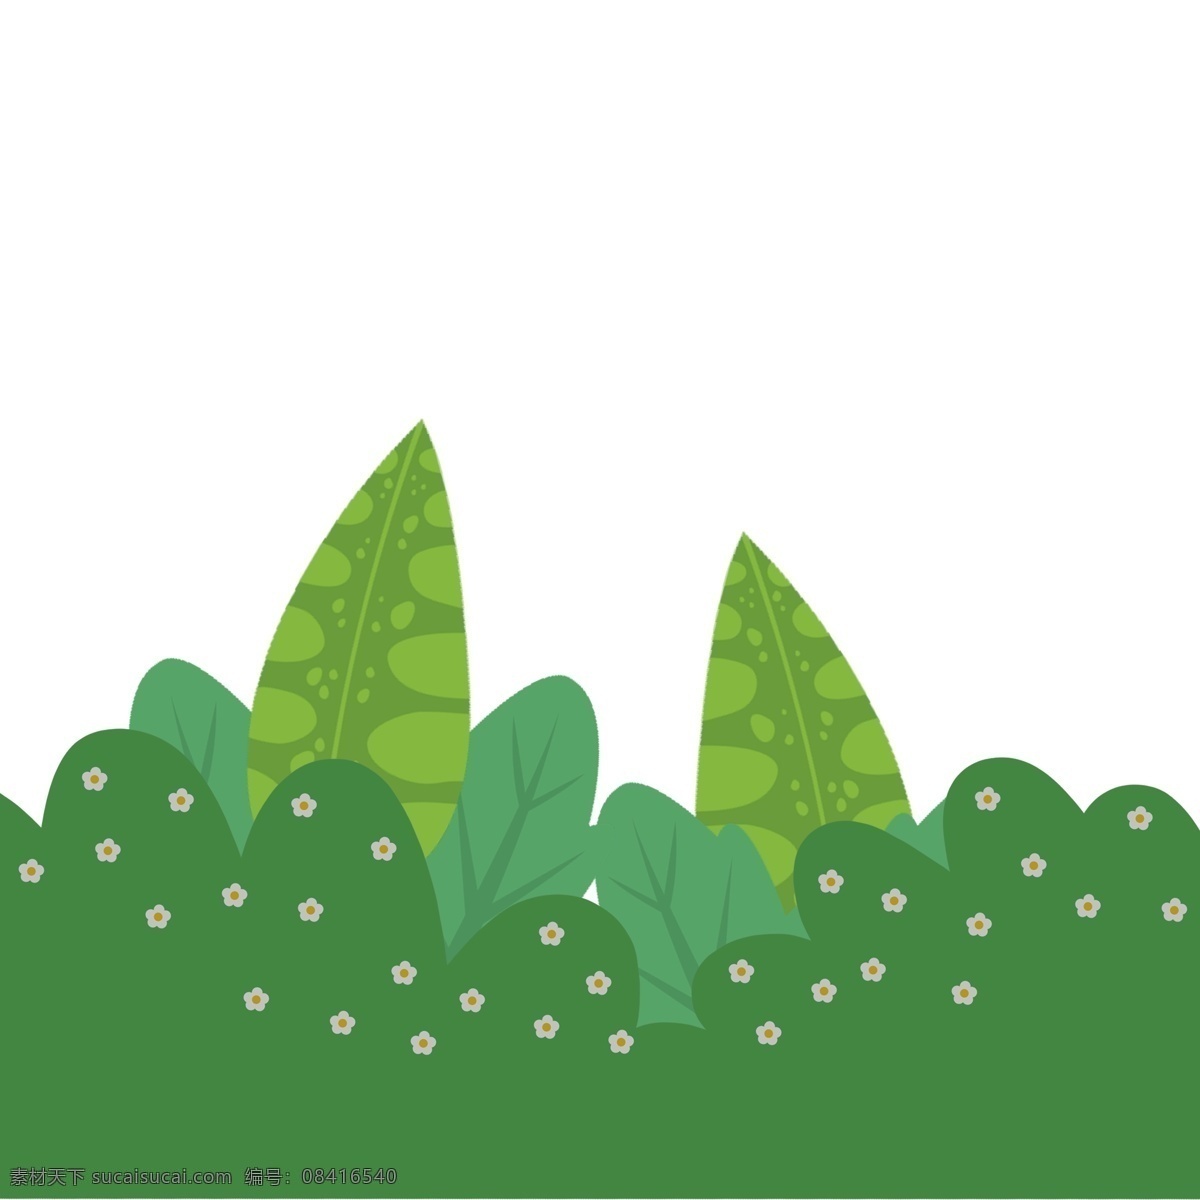 绿色植物 草丛 插画 绿色 植物 卡通 彩色 小清新 创意 手绘 绘画元素 现代 简约 装饰 图案